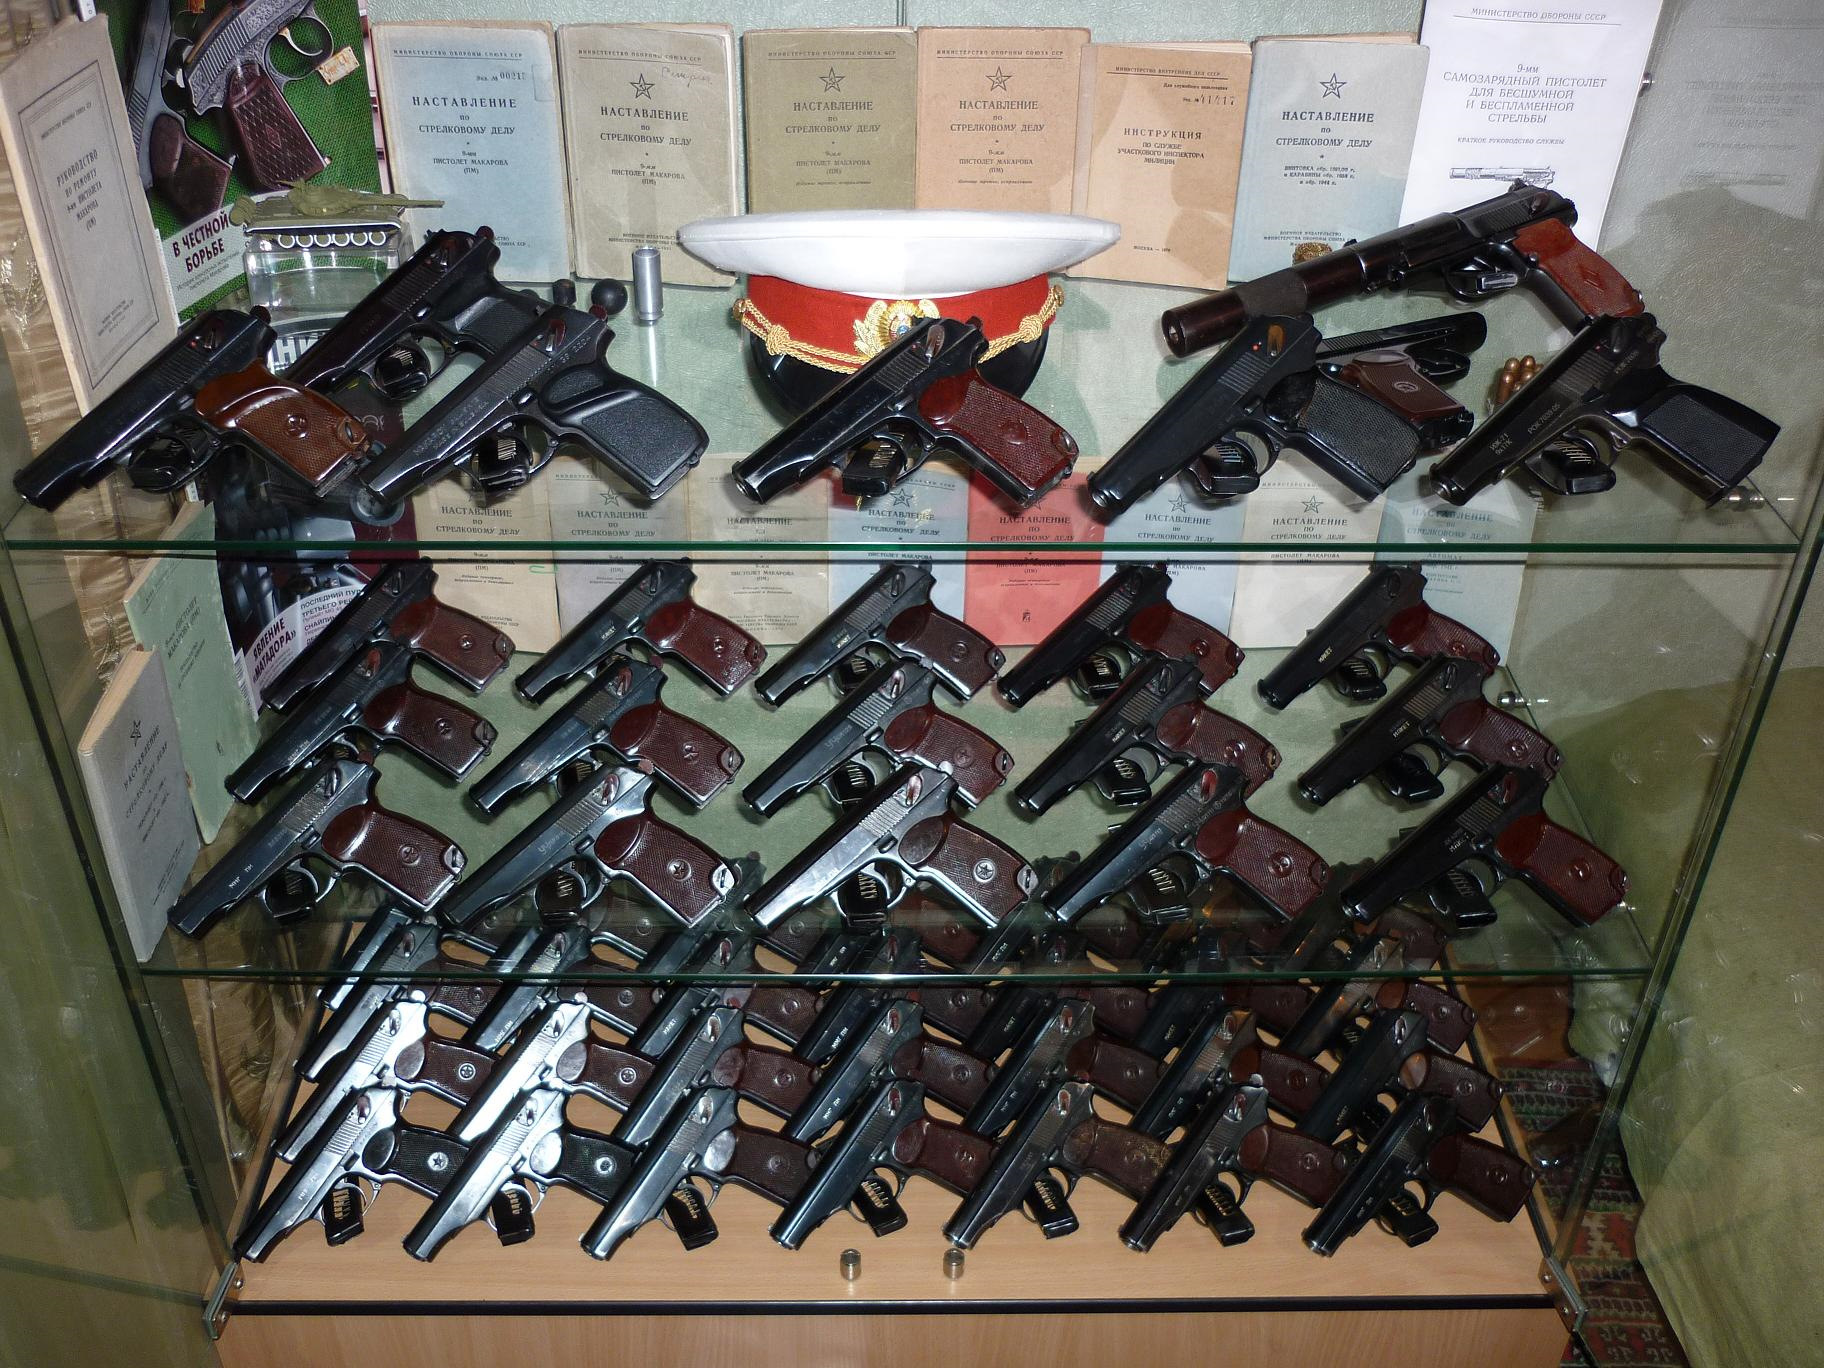 Ганза ру продажа оружия. Коллекция ММГ. Магазин макетов оружия. Коллекция ММГ оружия. Коллекции макетов оружия.